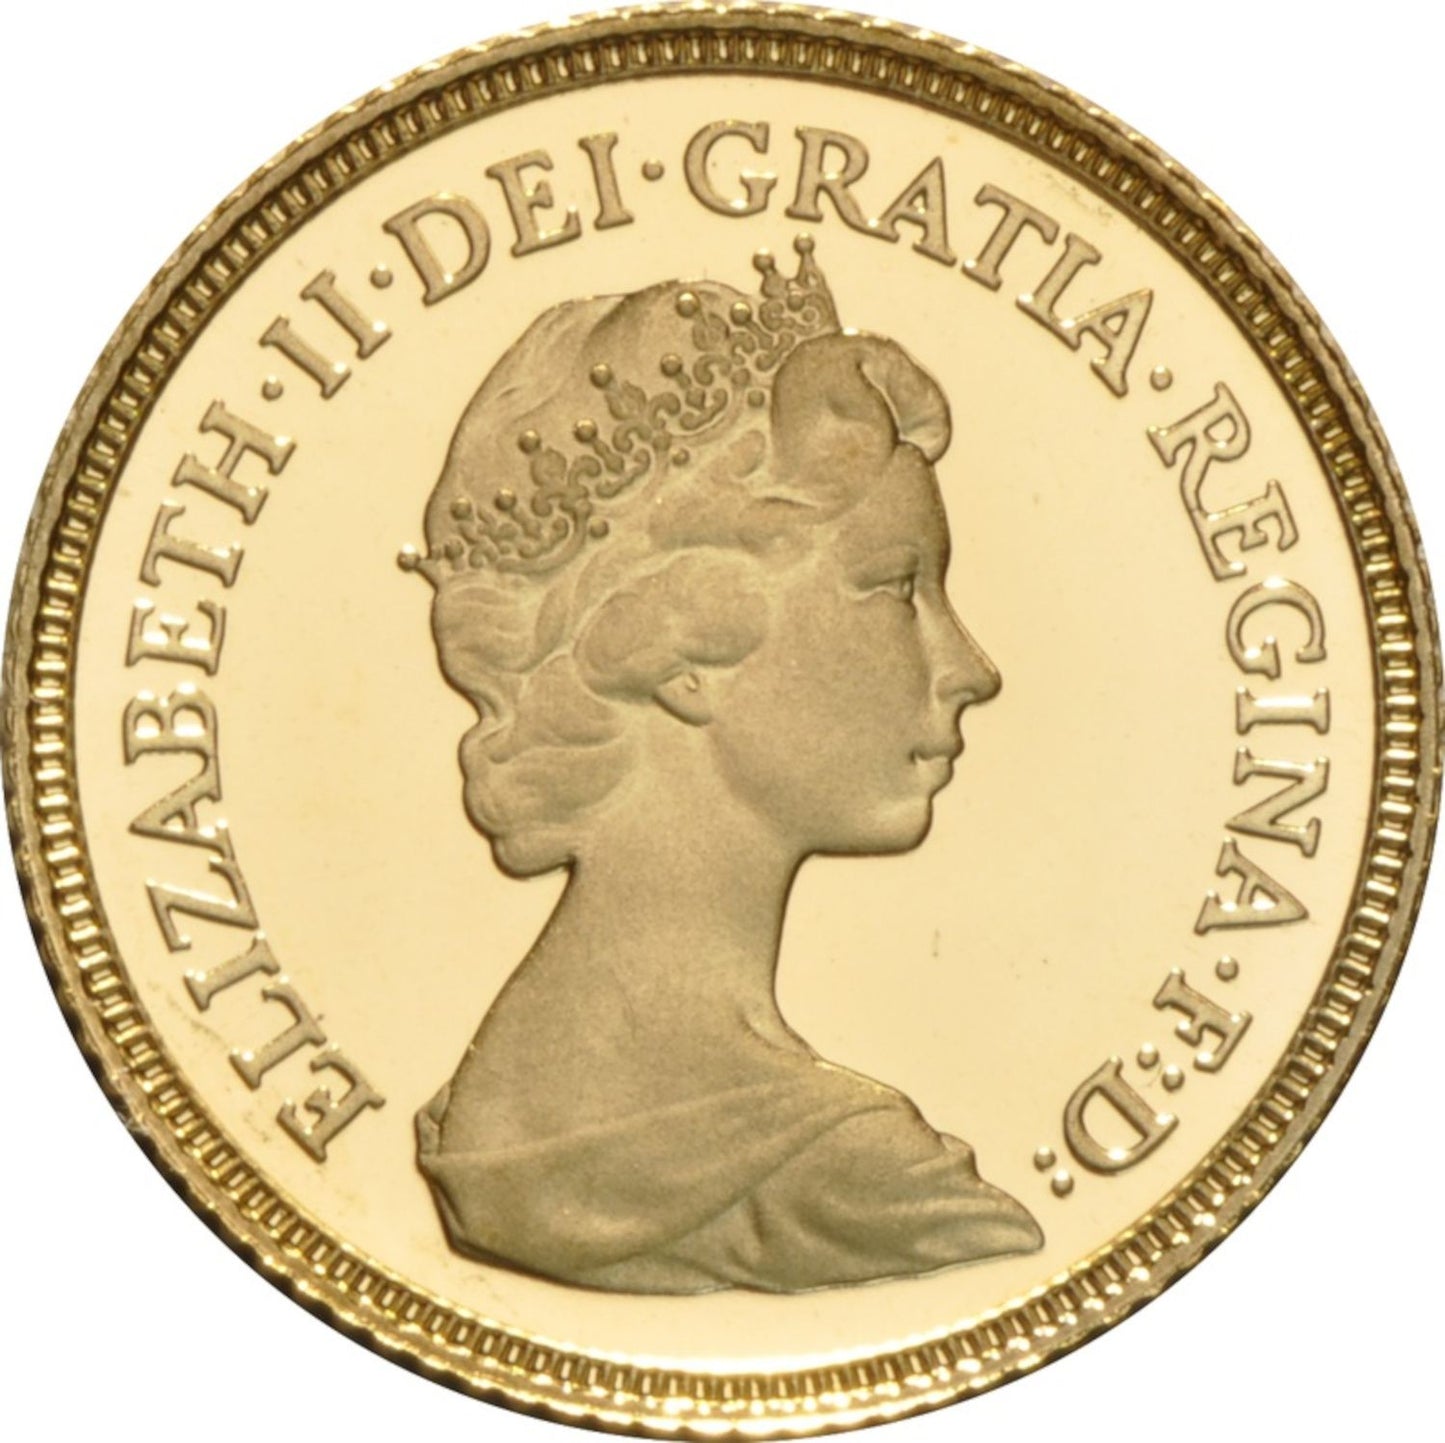 Gold 1/2 Sovereign Coin - Random Year Elizabeth - .9167 Au - United Kingdom